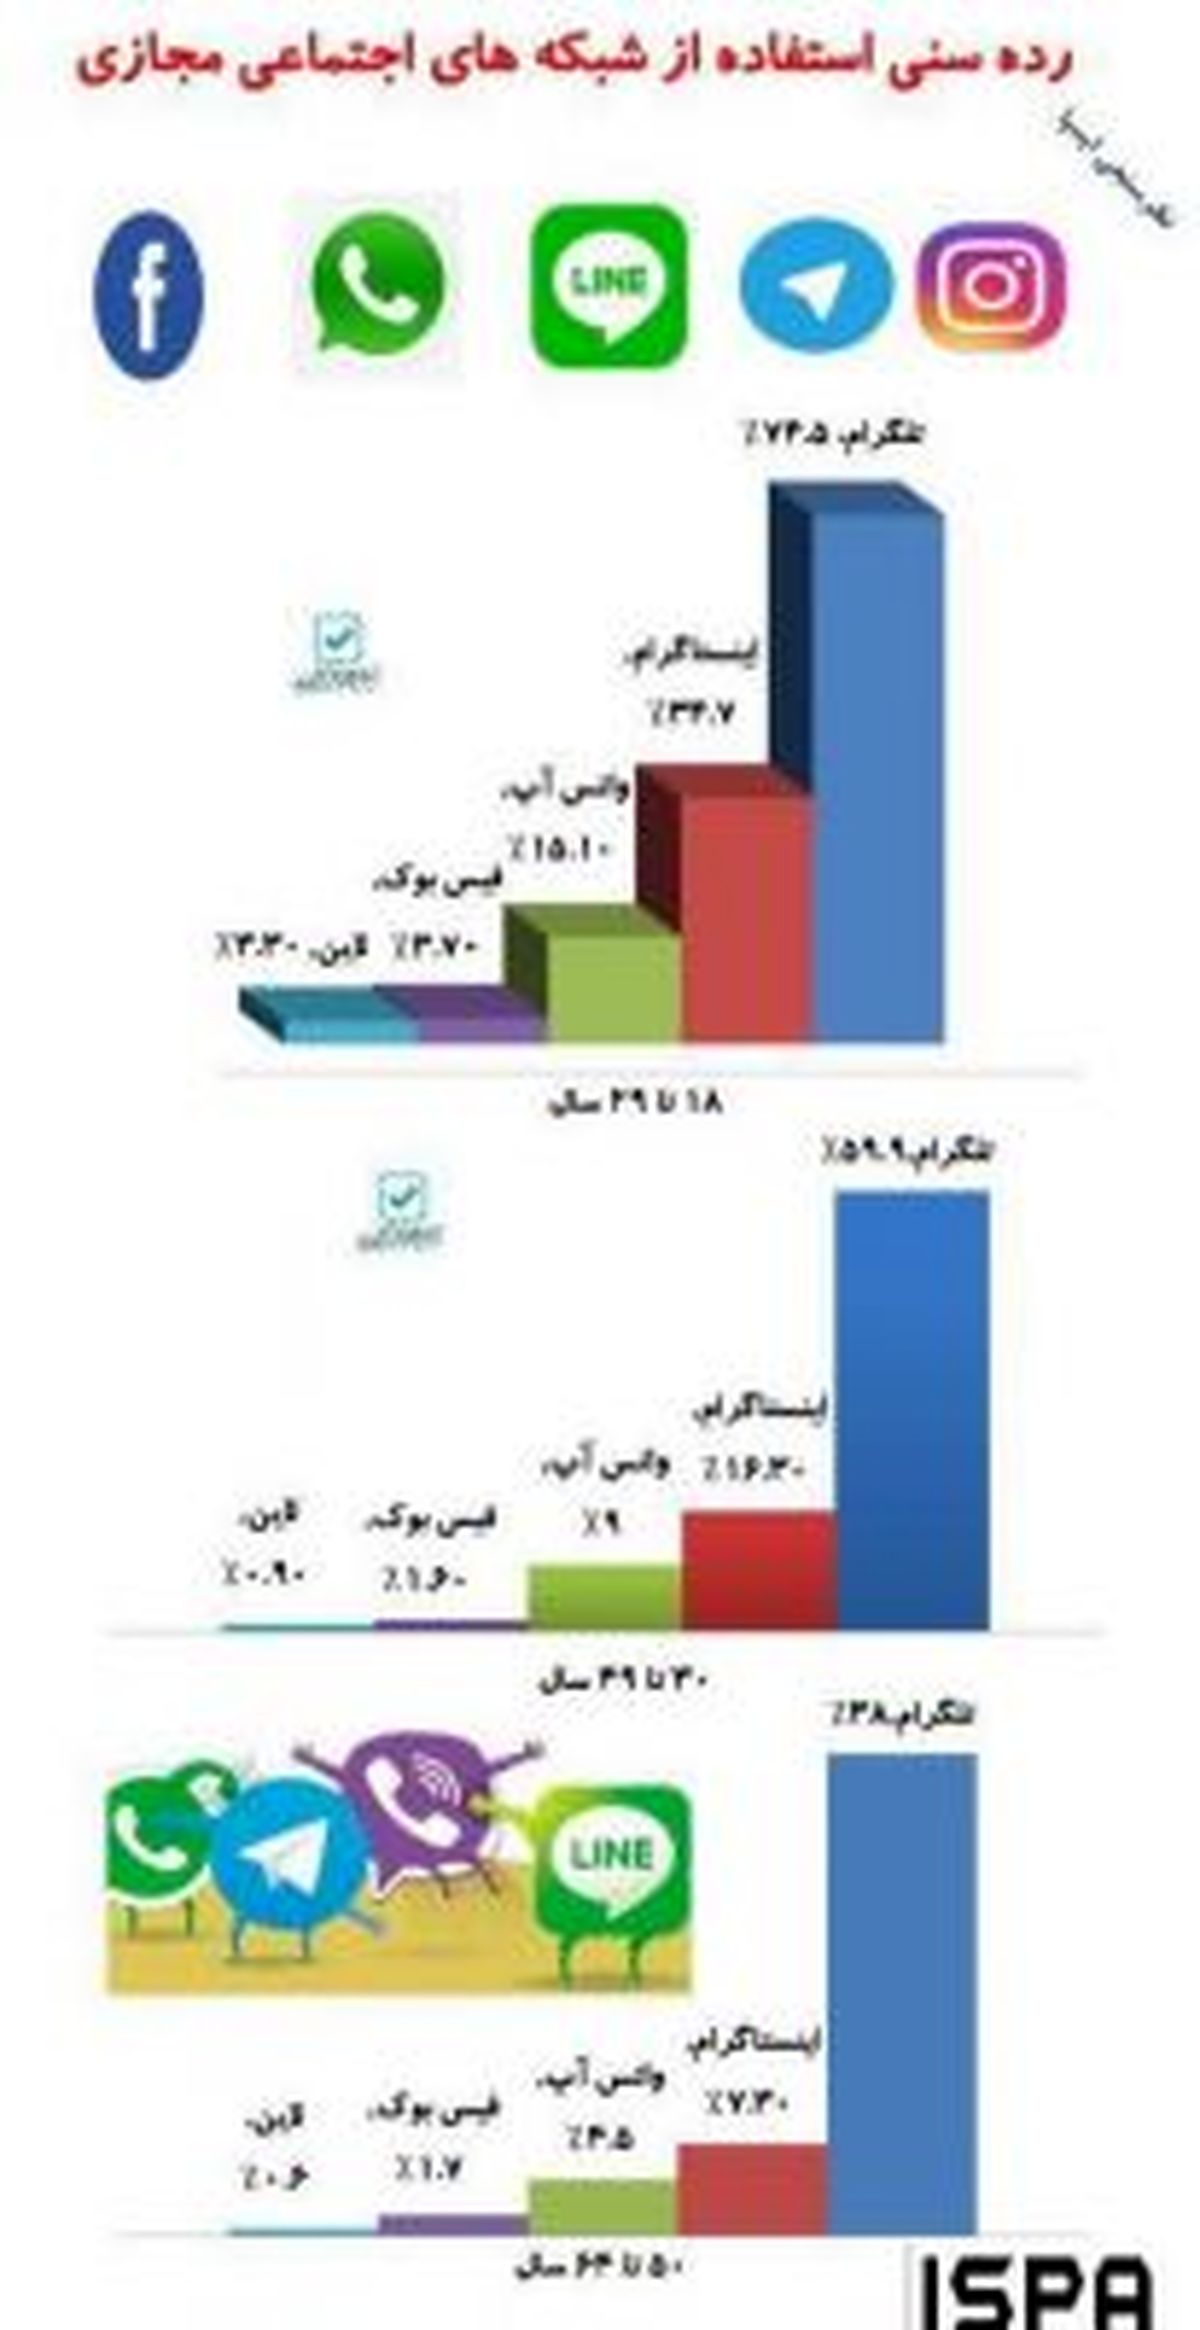 رده سنی استفاده از شبکه های اجتماعی مجازی ایرانیان+اینفوگرافی